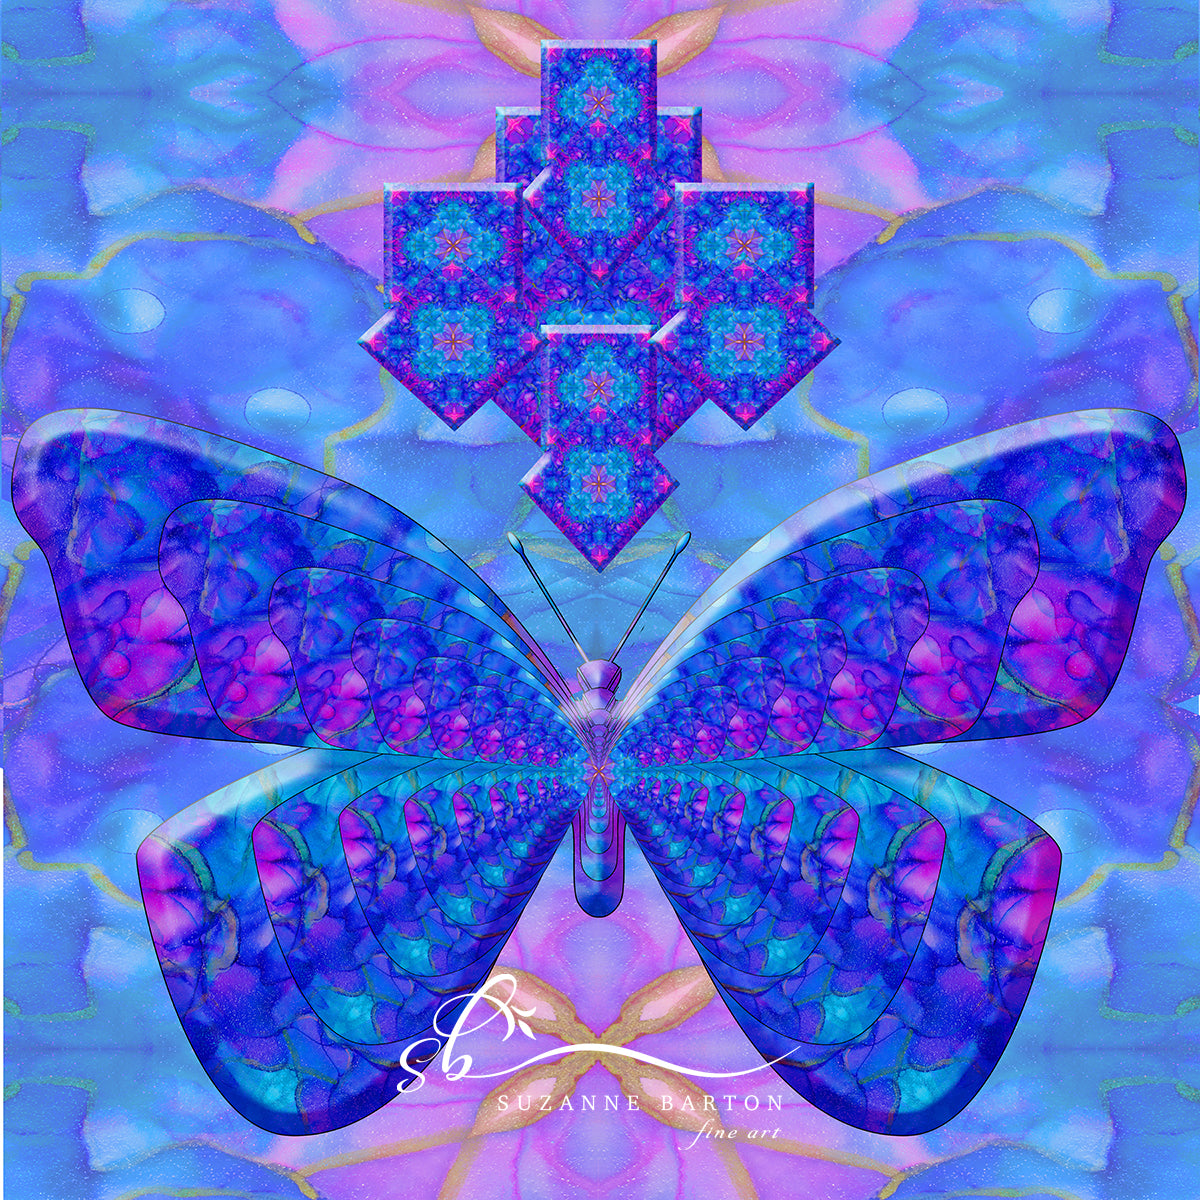 Butterfly Meditation